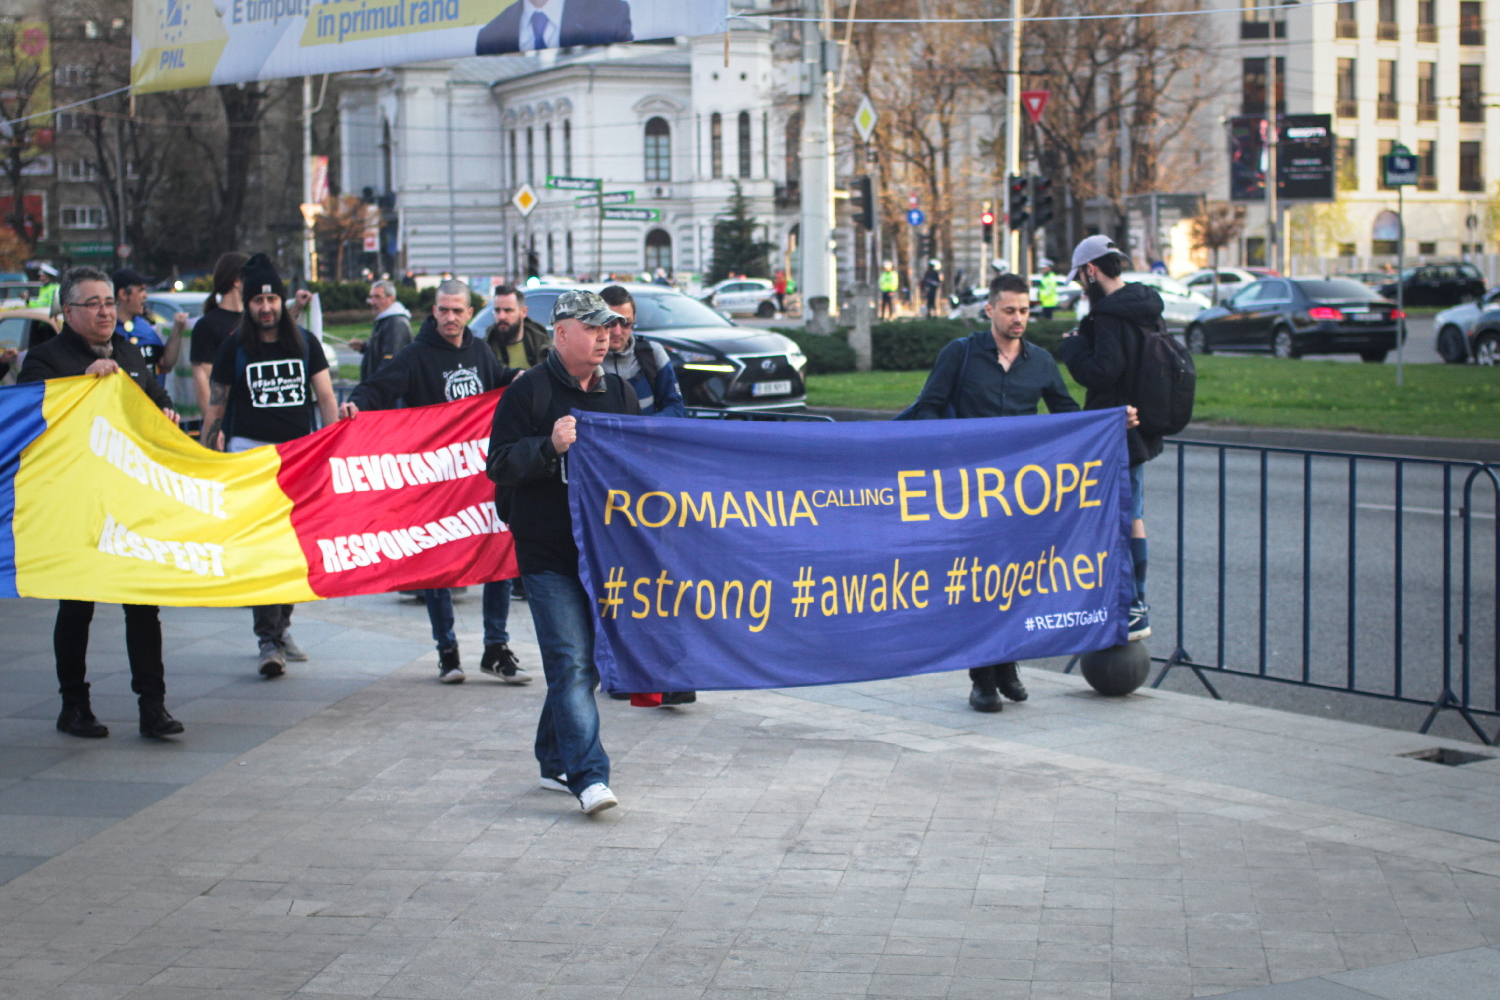 Au retour, notre envoyée spéciale tombe sur une petite manifestation contre le gouverne-ment, les réformes de justice et la corruption. Depuis février 2017, les manifestations sont fréquentes contre le pouvoir en place. L’Union européenne est souvent appelée à « sauver » le pays. Ici, la banderole annonce : « Romania appelle l’Europe #fort #réveil #ensemble ».